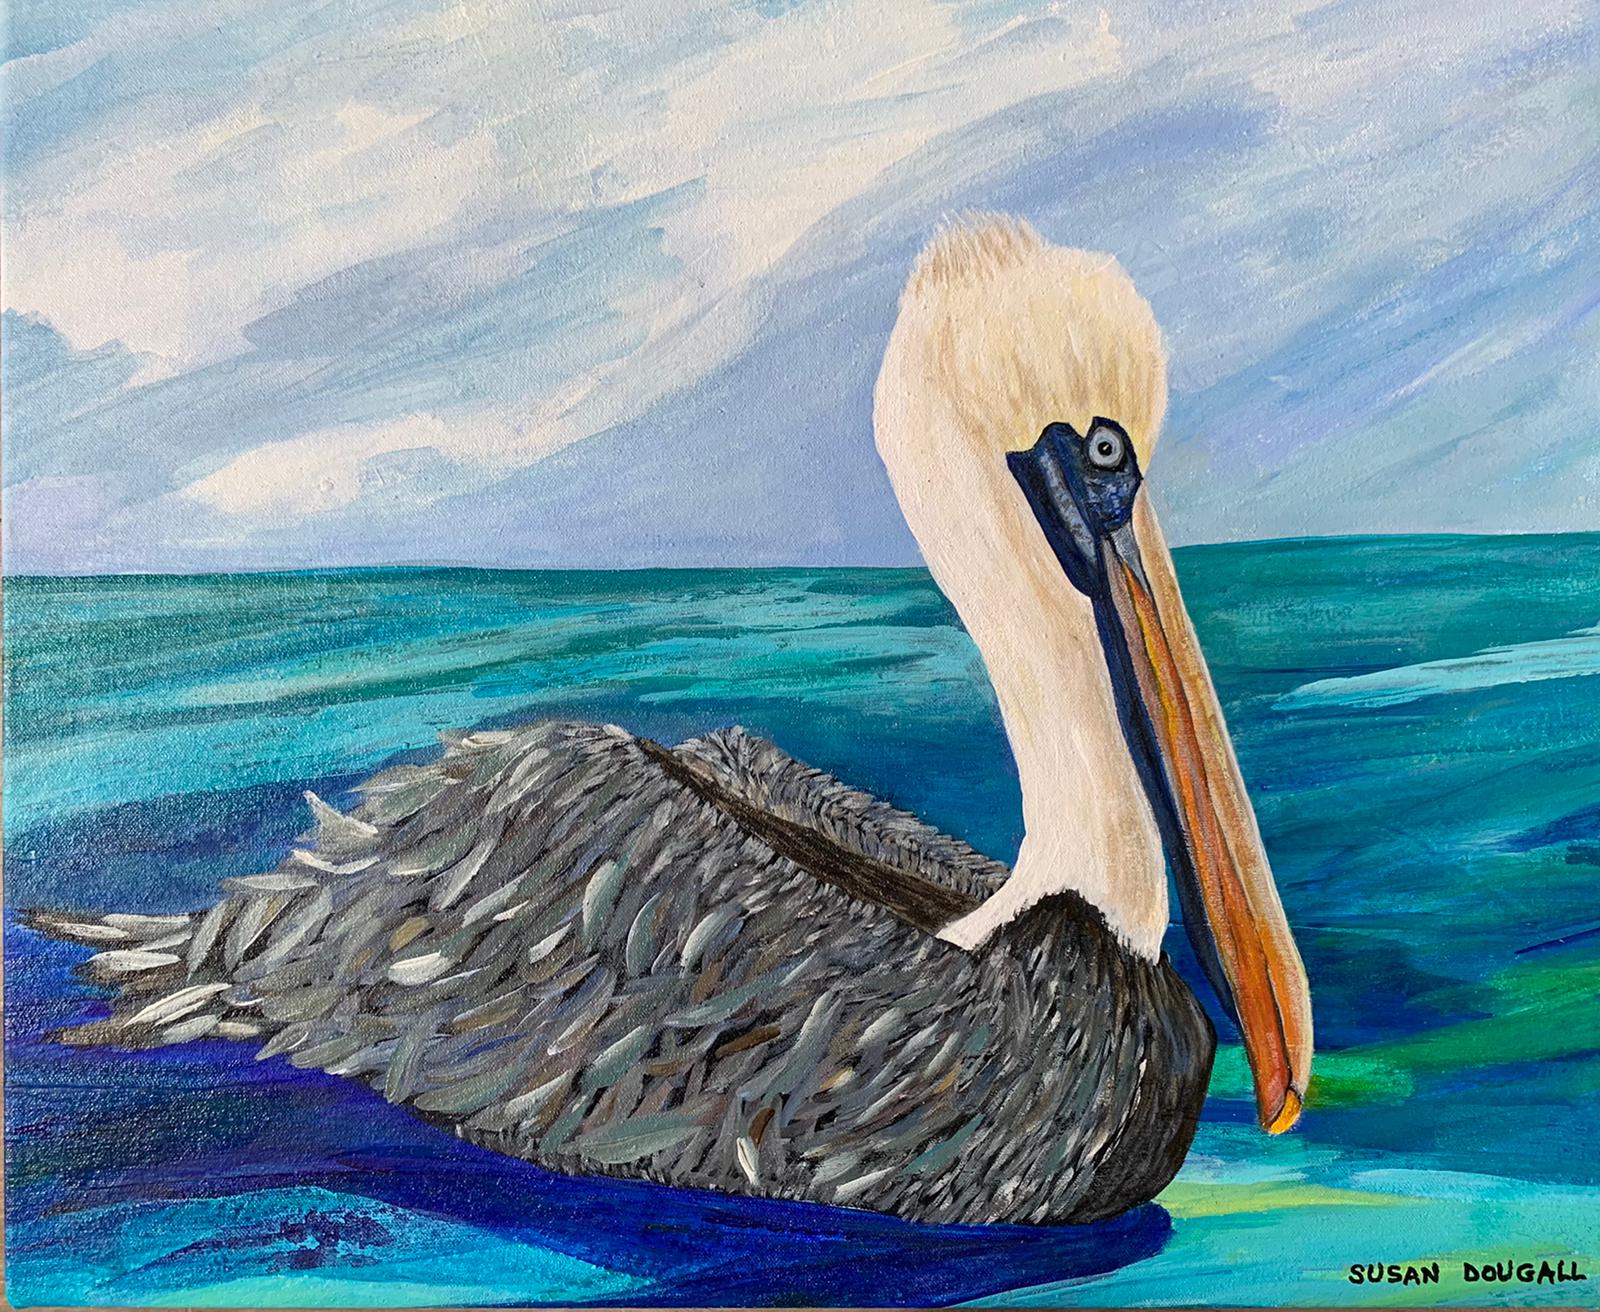 Pelican, 25"L x 20.5"W